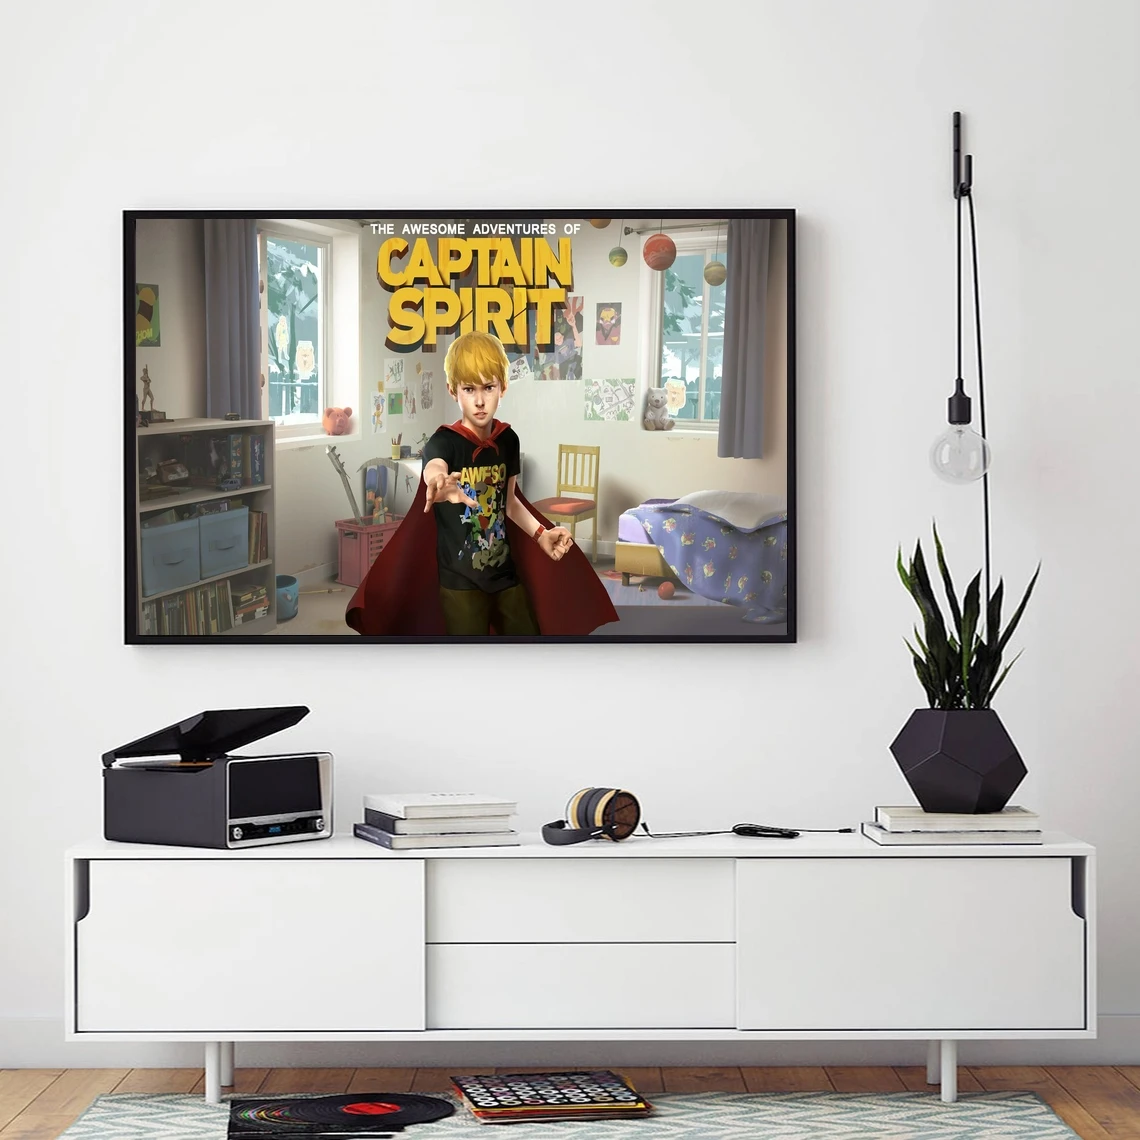 

Удивительные Приключения капитана духа игра плакат Художественная печать холст живопись стены картины гостиная домашний Декор (без рамки)